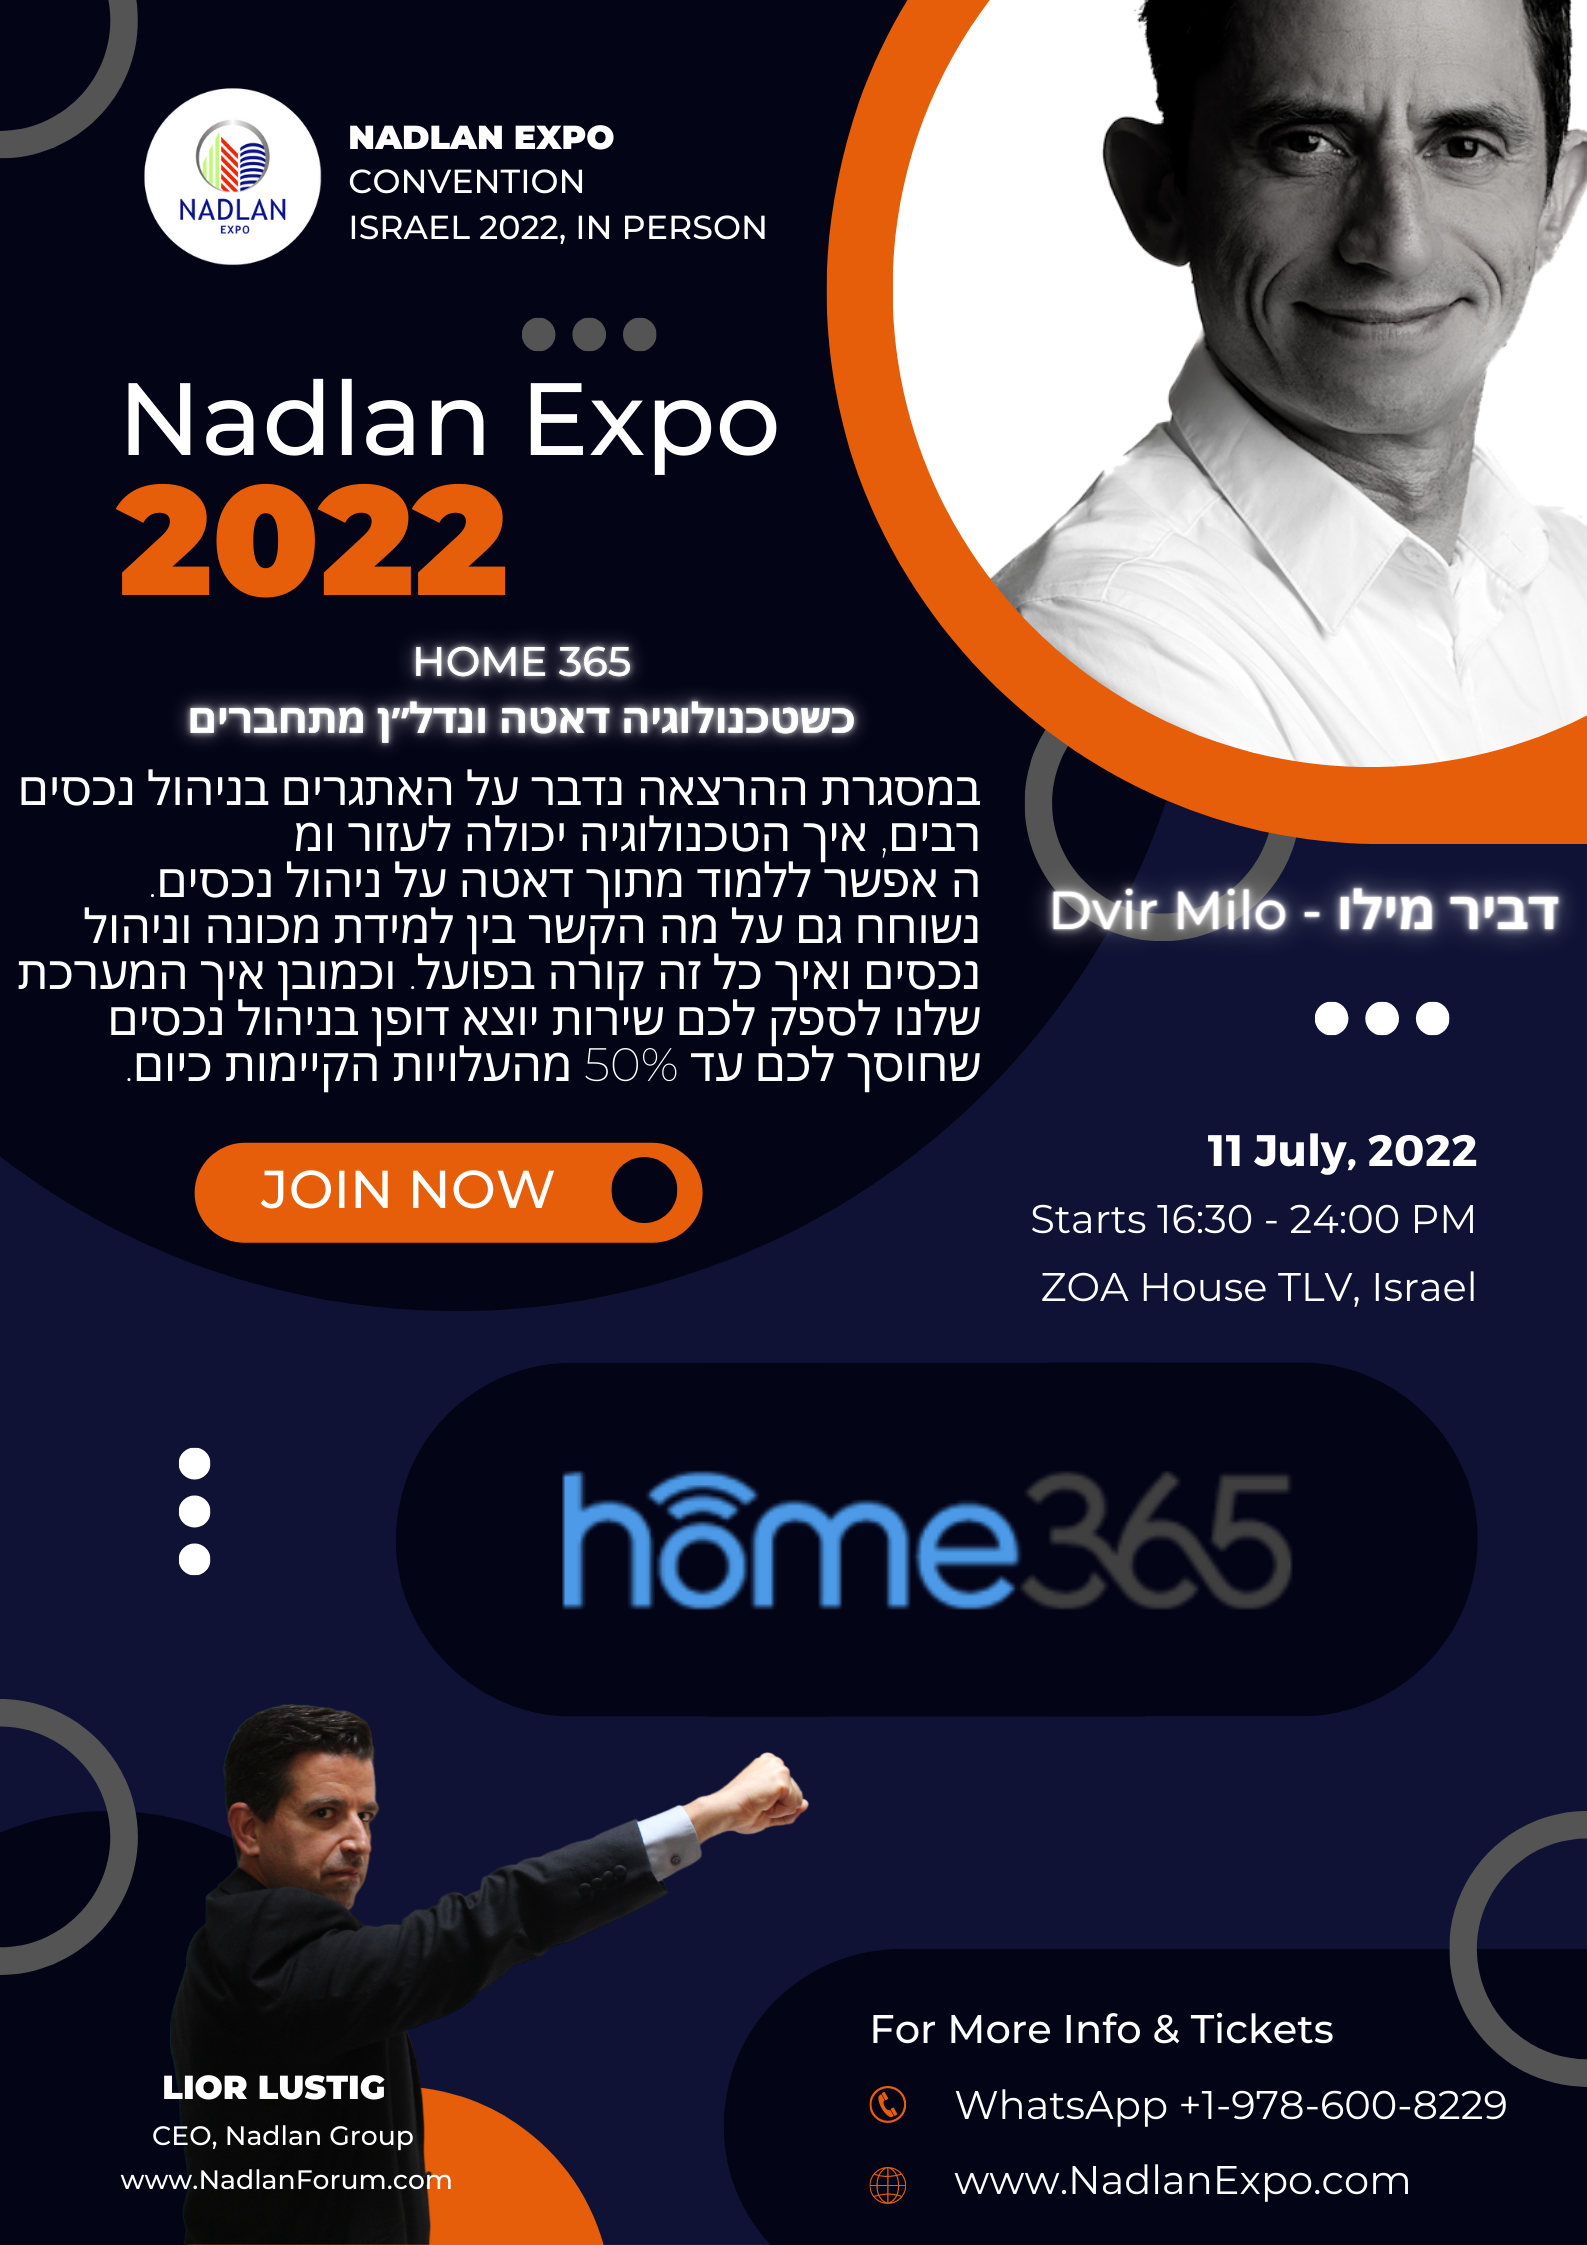 _Nadlan Expo 2022 - Dvir Milo - Hebrew